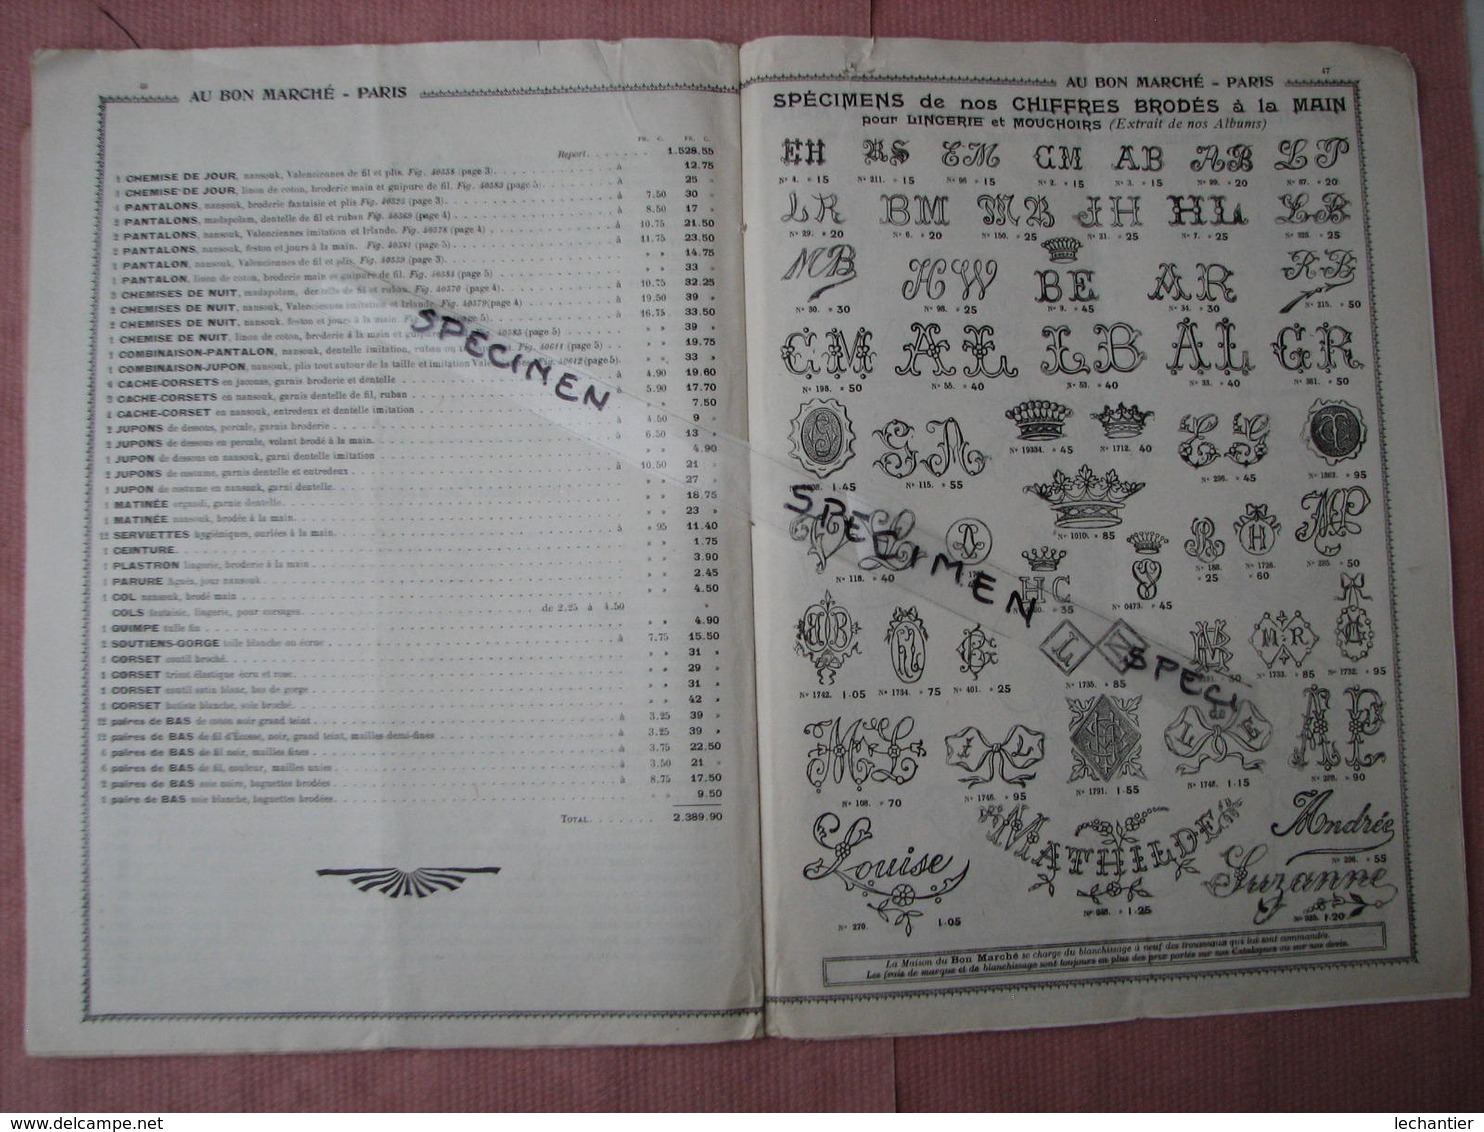 Au Bon Marché 1919 1 catalogue blanc 1 cata. 1916 + vetements communion,+ doc 12 échantillons tissus